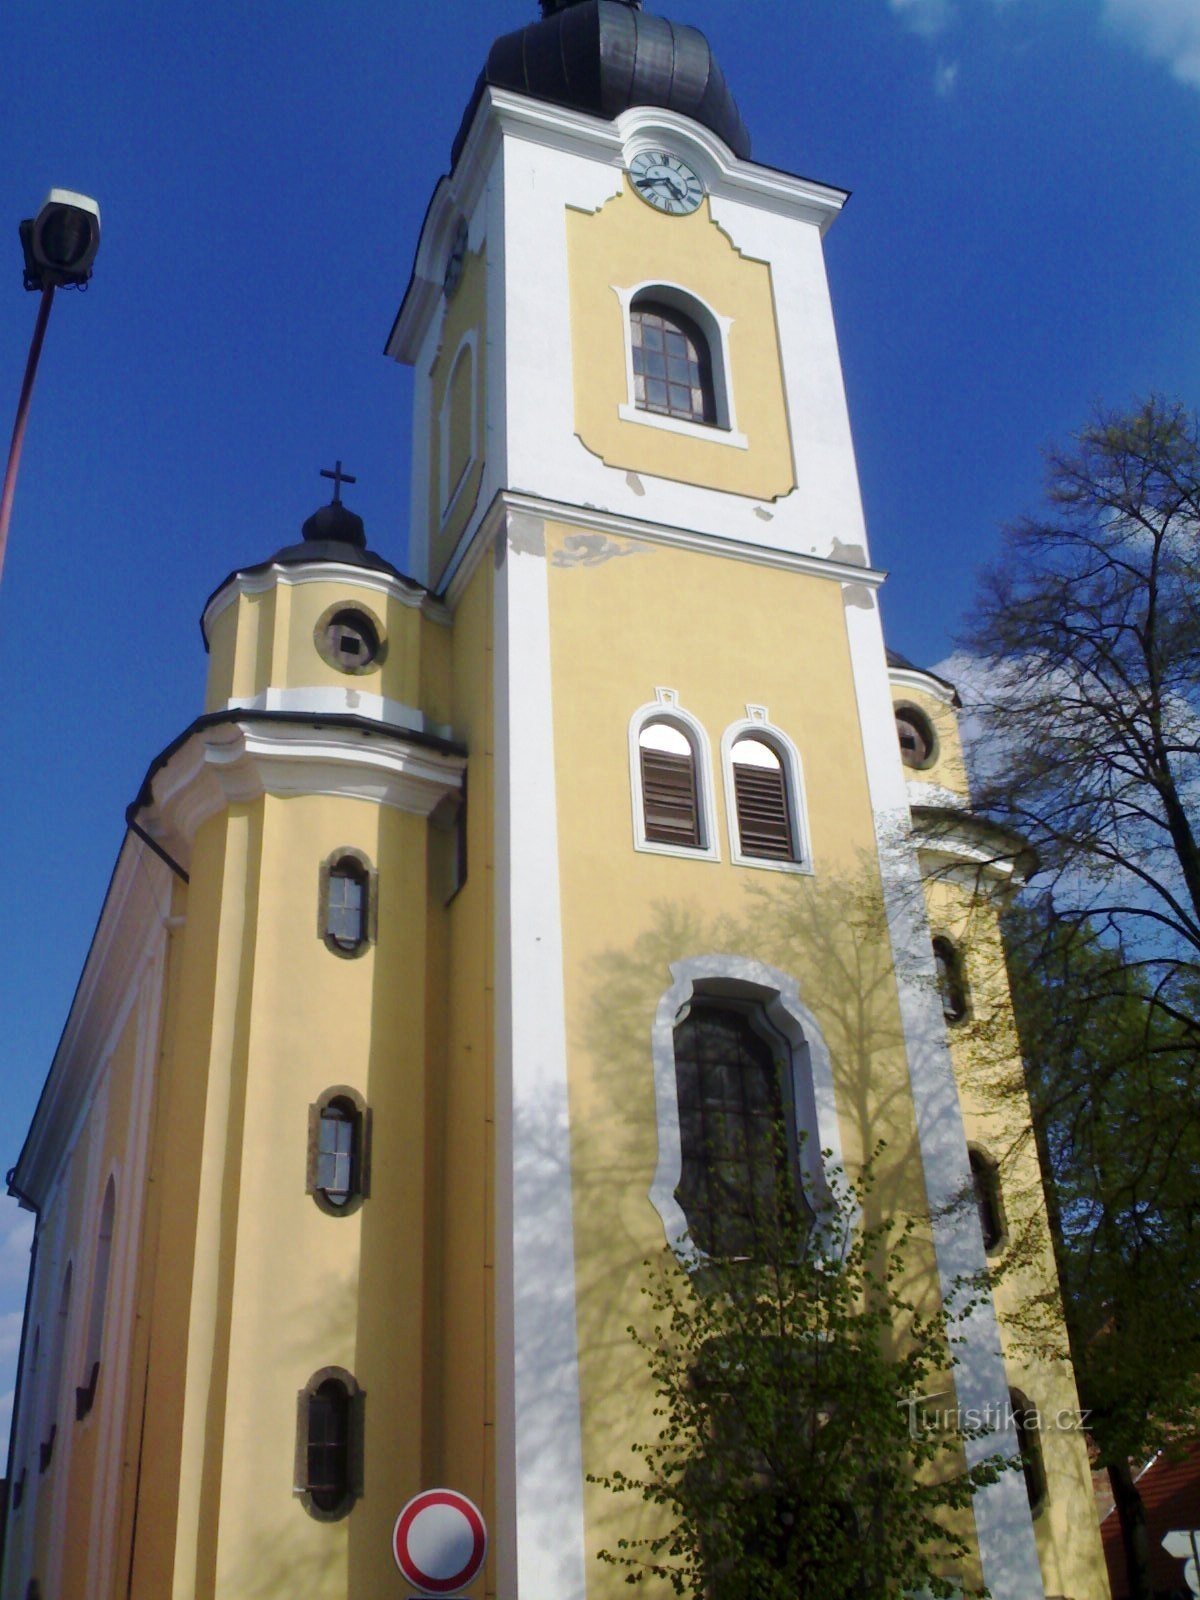 Třebechovice pod Oreb - Pyhän Nikolauksen kirkko. Andrew